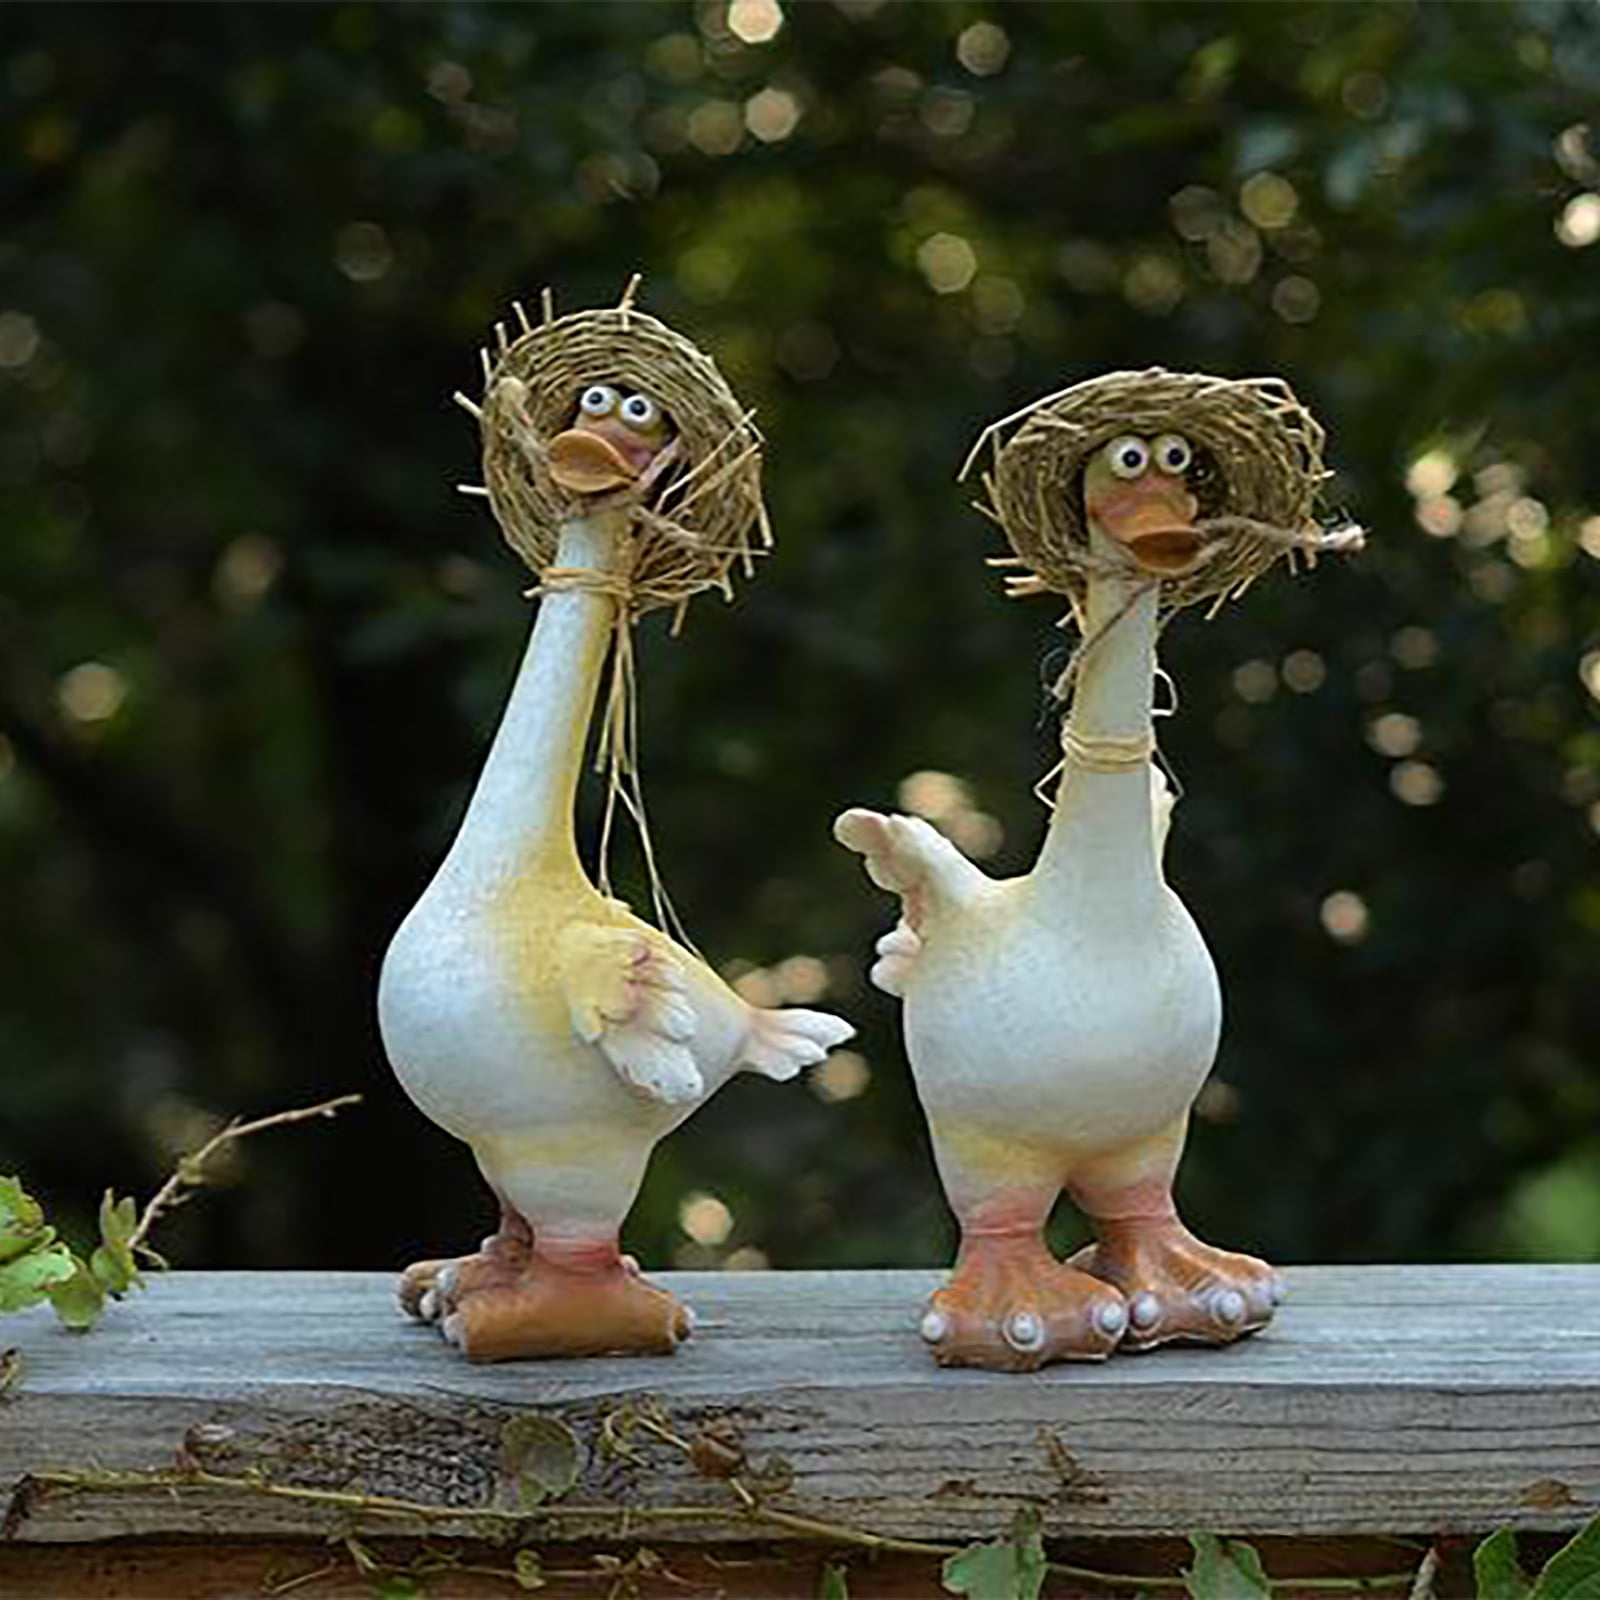 Creative Outdoor Garden Simulation Resin Bird Home Decor Crafts  Ornaments